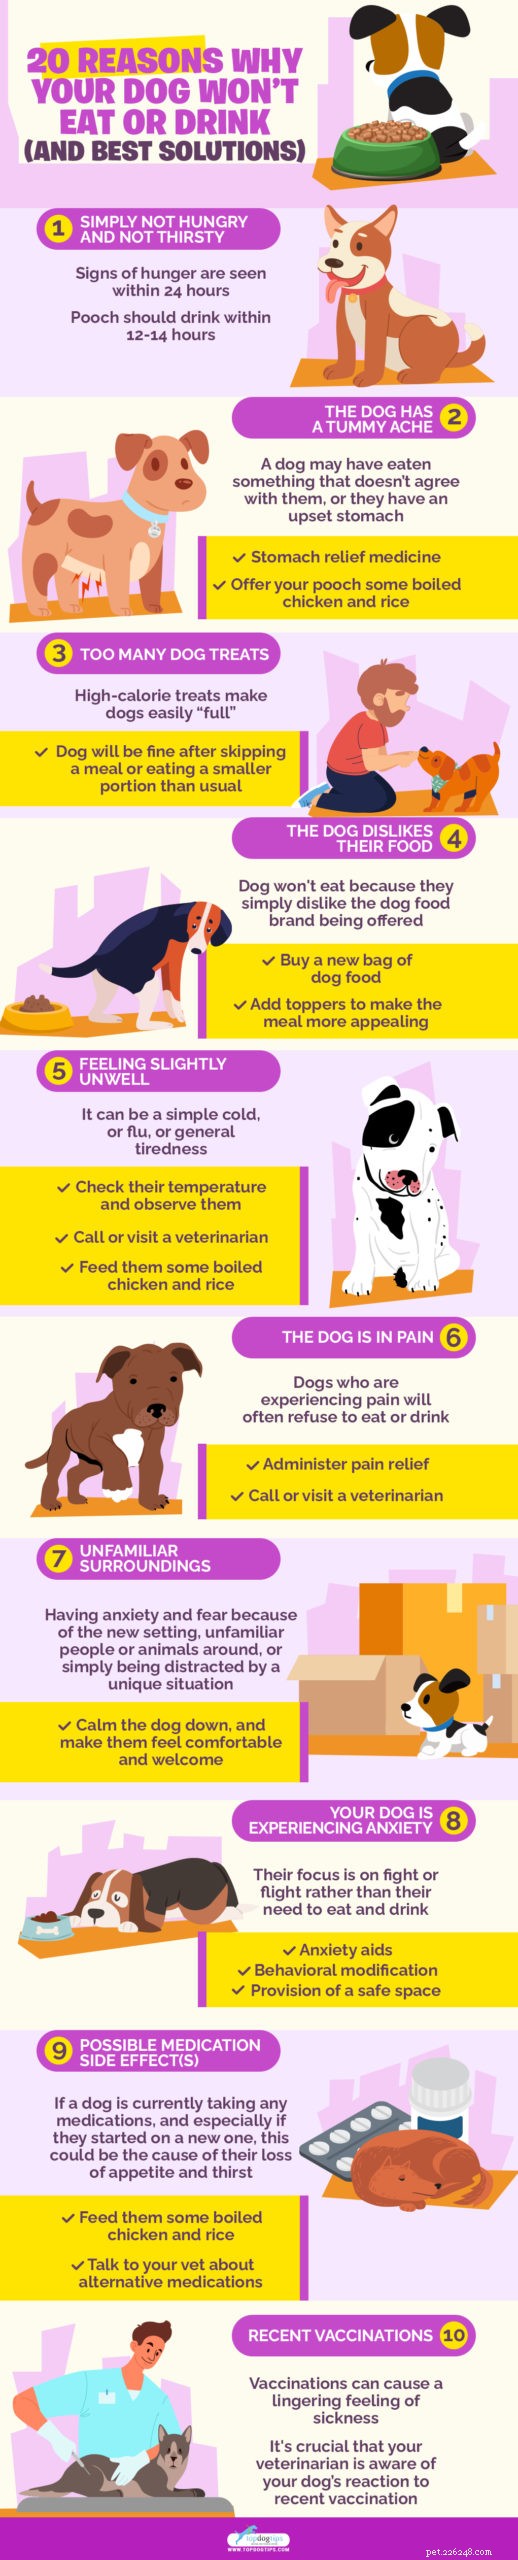 20 raisons pour lesquelles votre chien refuse de manger ou de boire (et les meilleures solutions)